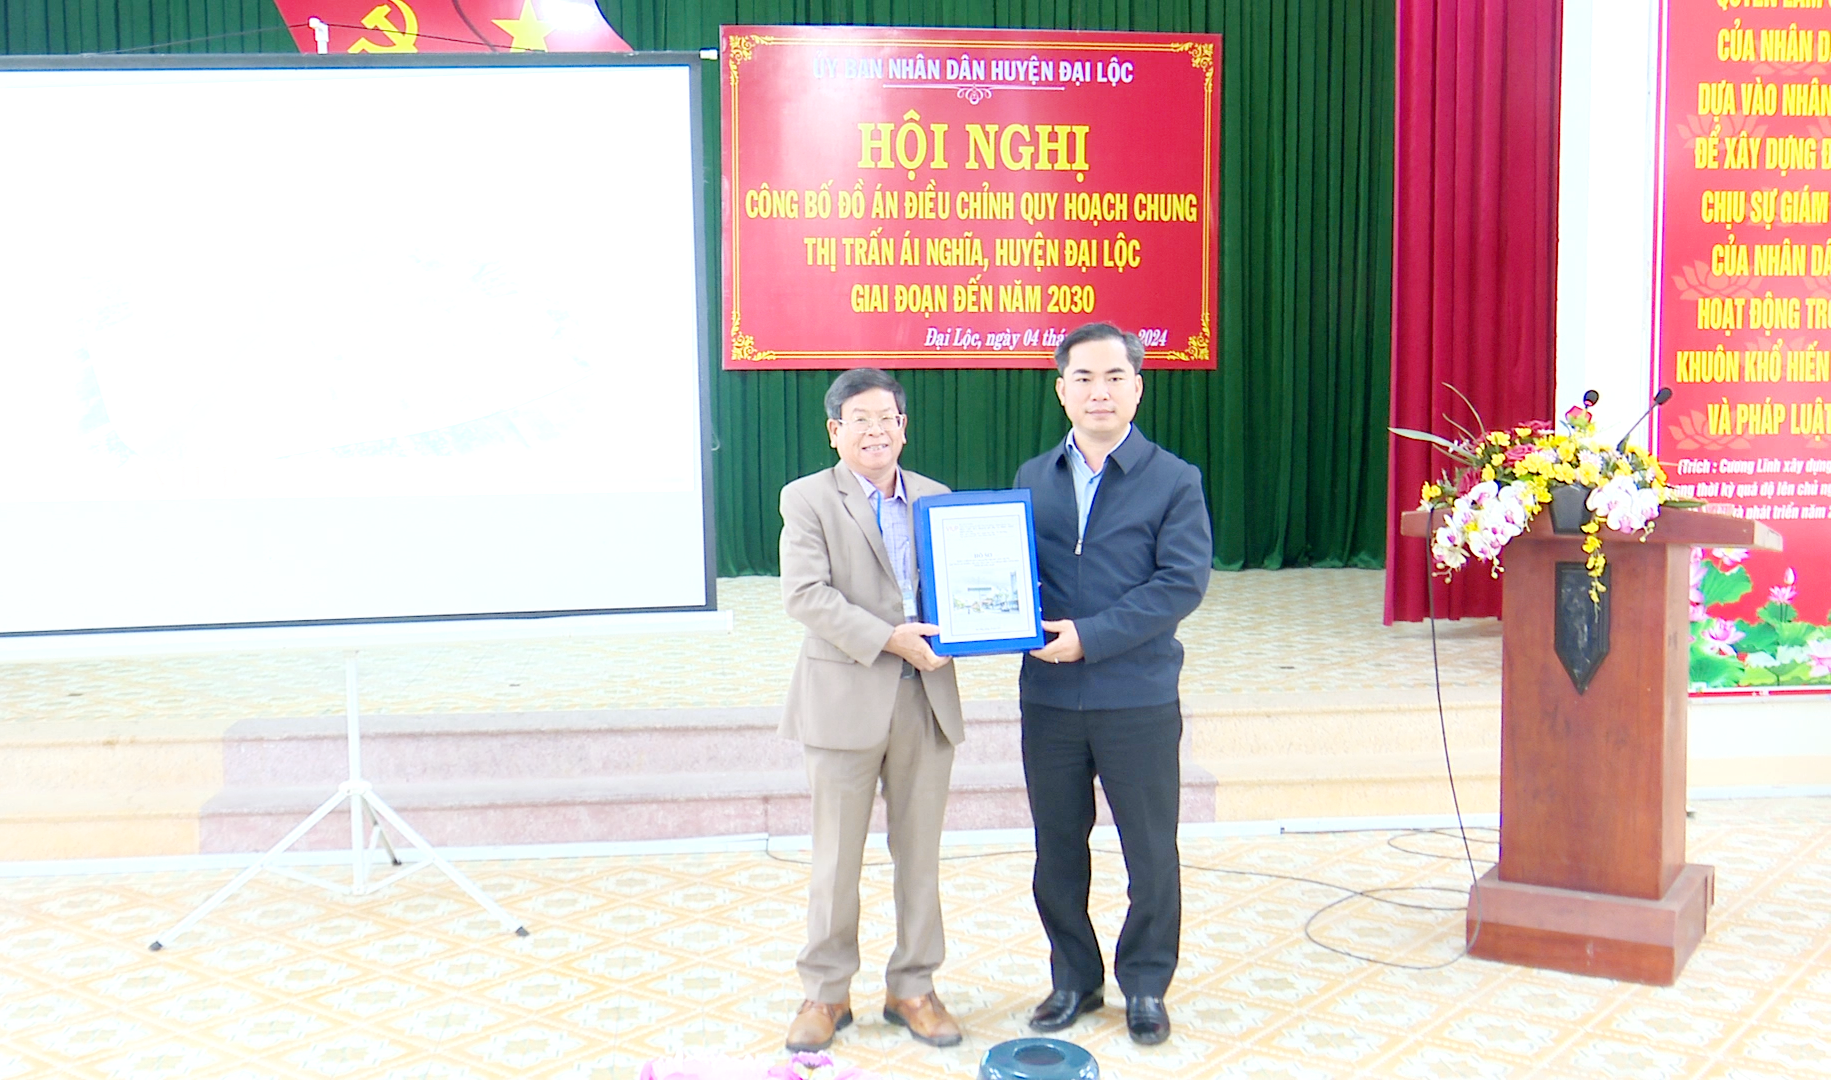 Chủ tịch UBND huyện Đại Lộc - Lê Văn Quang trao quyết định quy hoạch chung thị trấn Ái Nghĩa cho lãnh đạo thị trấn.